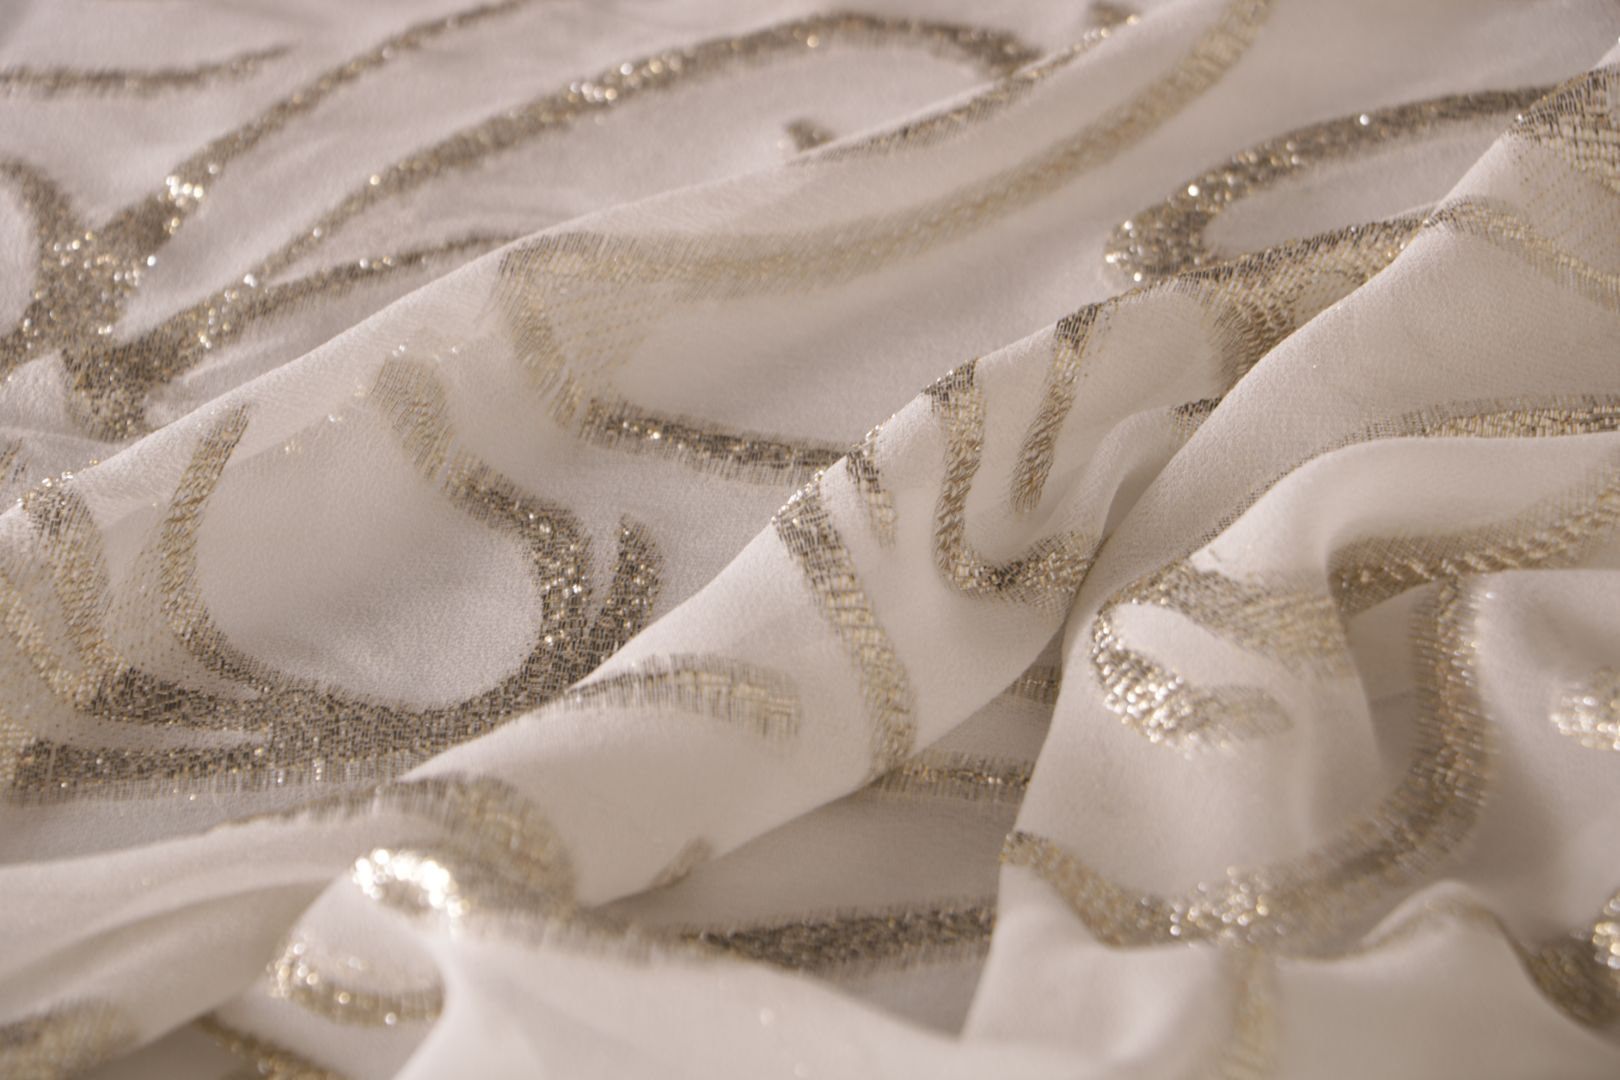 Tessuto Bianco, Giallo in Poliestere, Seta per Abbigliamento UN001179